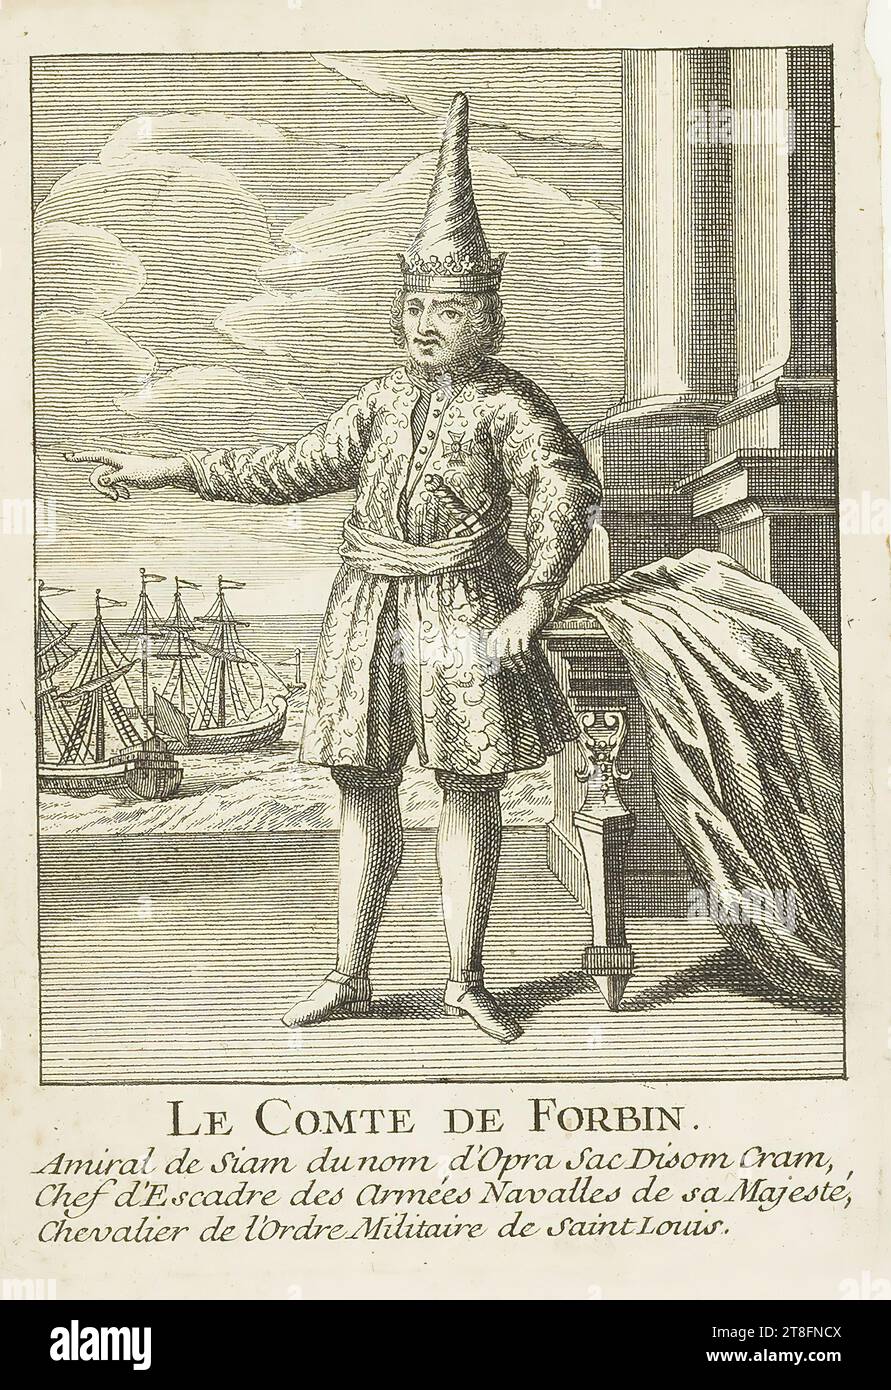 LE COMTE DE FORBIN., amiral du Siam du nom d'Opra Sac Disom Cram, chef d'escadron des armées navales de sa Majesté, chevalier de l'ordre militaire de Saint Louis Banque D'Images